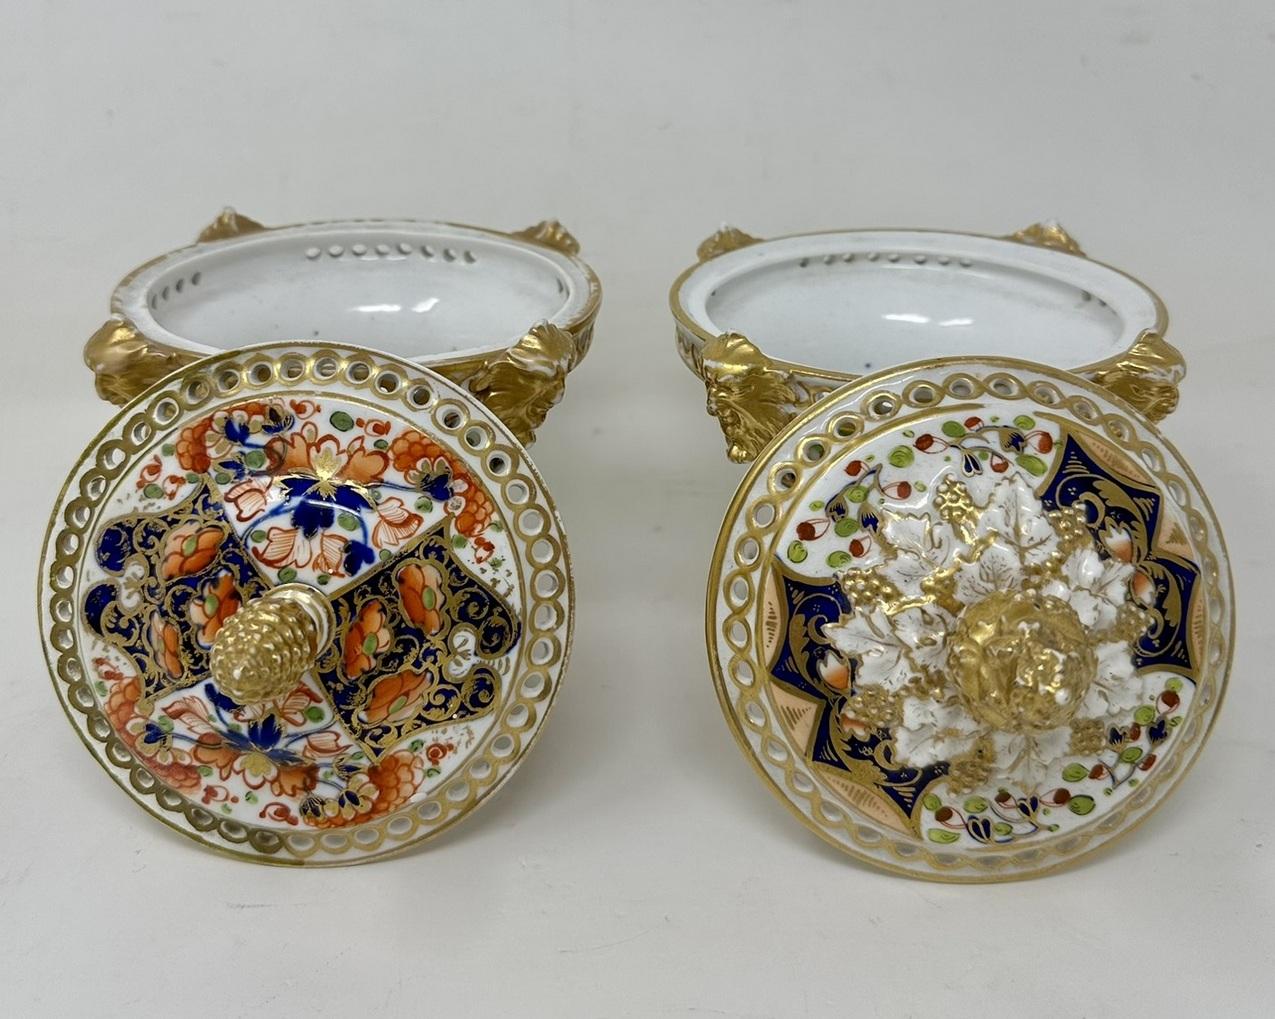 Antique Regency English Crown Derby Pair Urns Vases Pot Pourri Centerpieces 1815 For Sale 2